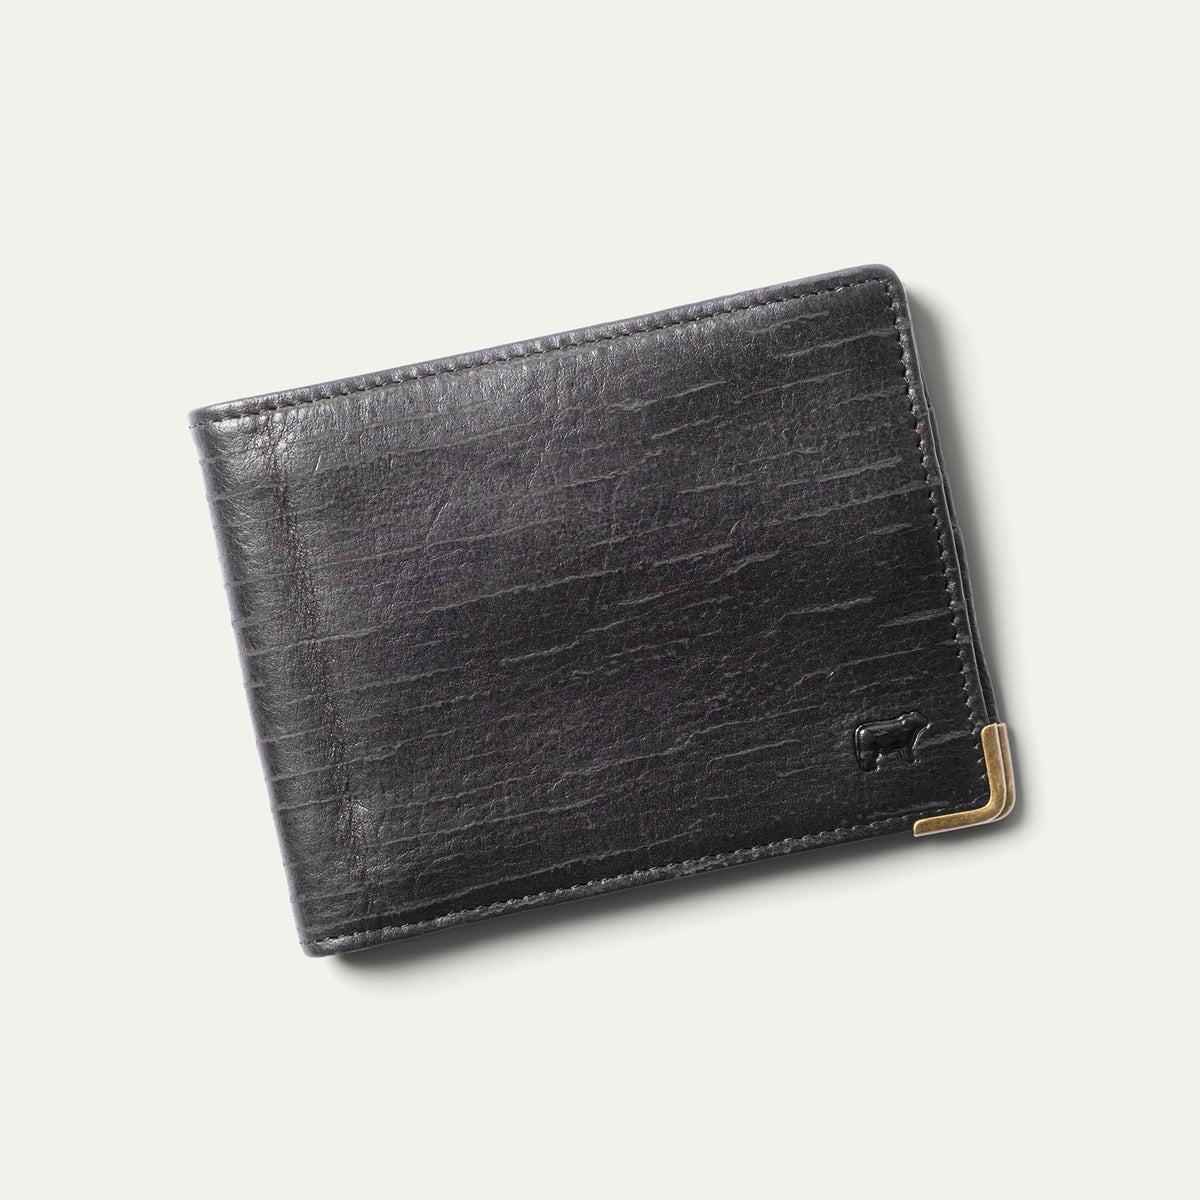 Gucci - Webbing-Trimmed Full-Grain Leather Cardholder - Men - Black Gucci